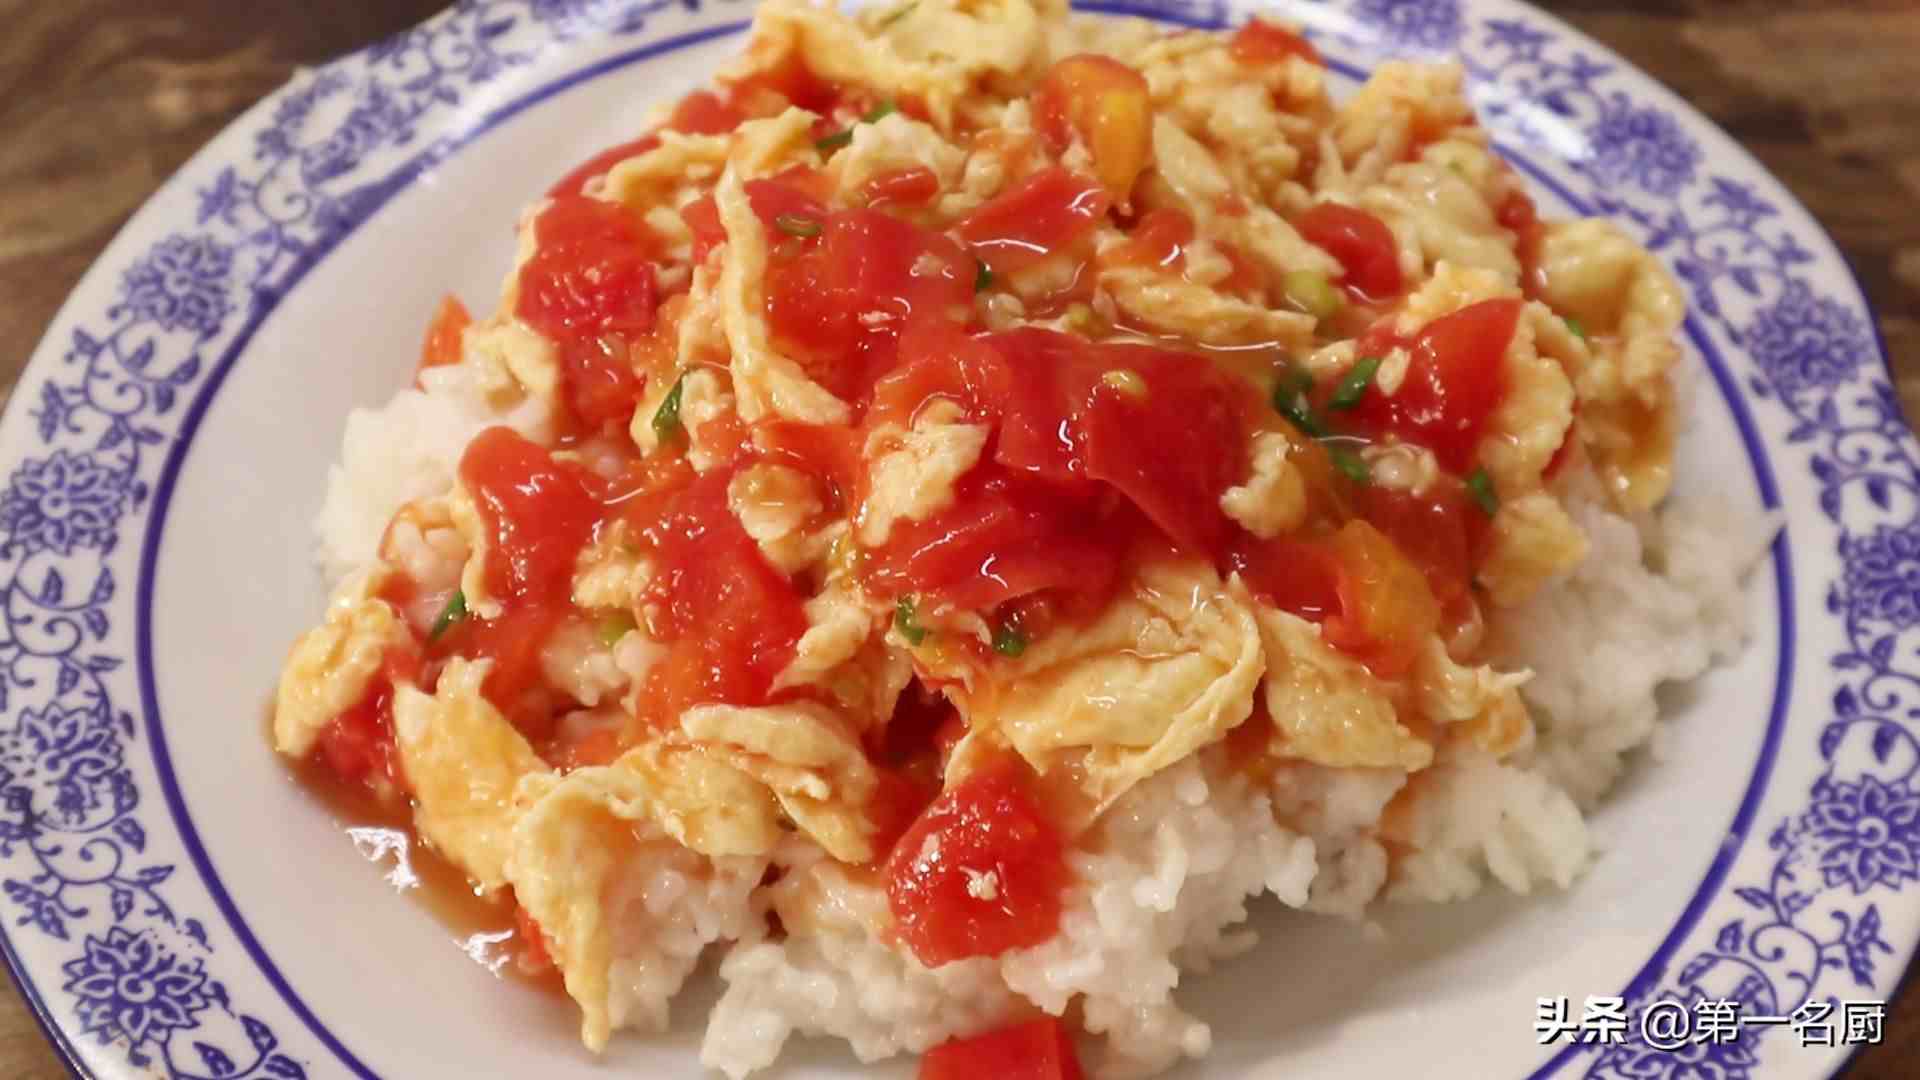 西红柿炒蛋盖饭图片